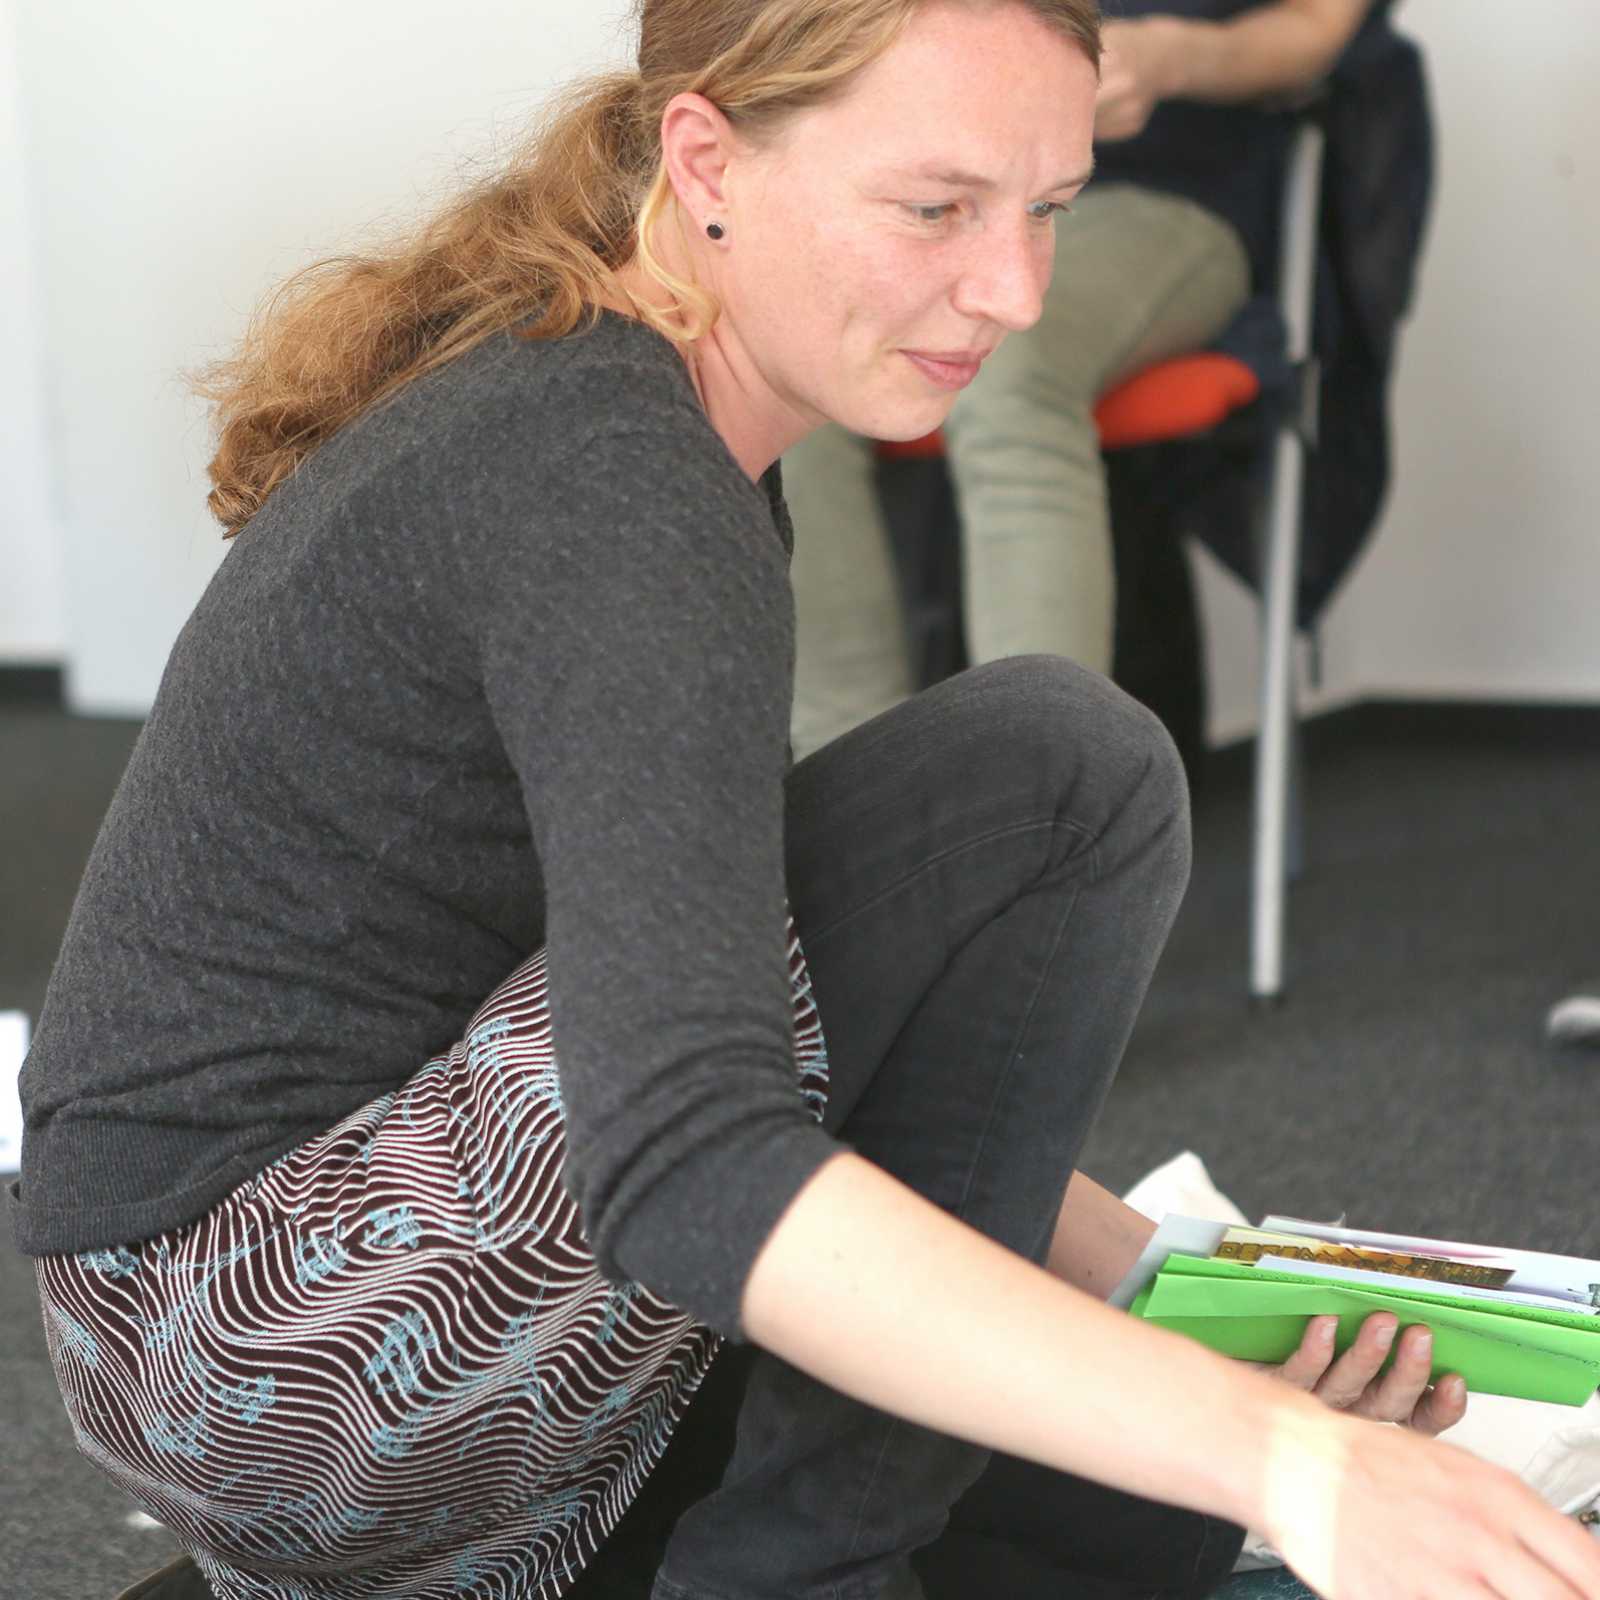  Auch in der Weiterbildung ist die Soziale Arbeit mit Geflüchteten ein wichtiges Thema. (Foto: FH Münster/Pressestelle)